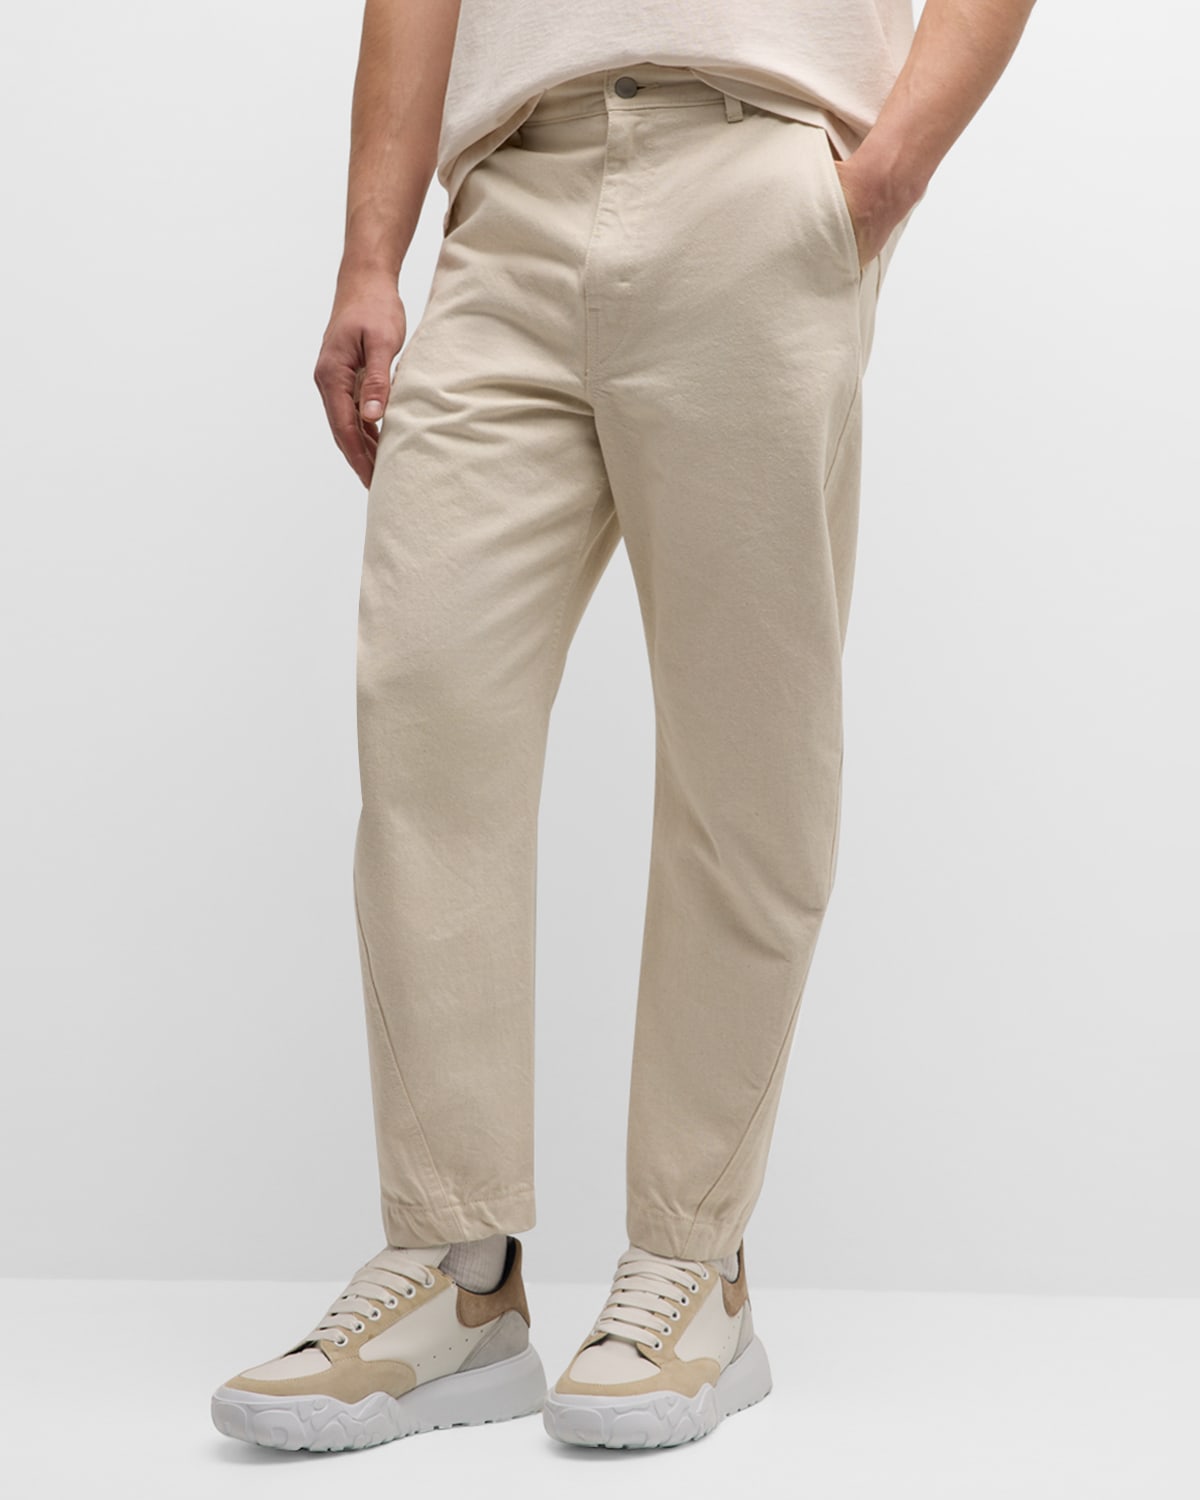 John Elliott Men's Sendai Pants With Asymmetric Seams In Organic